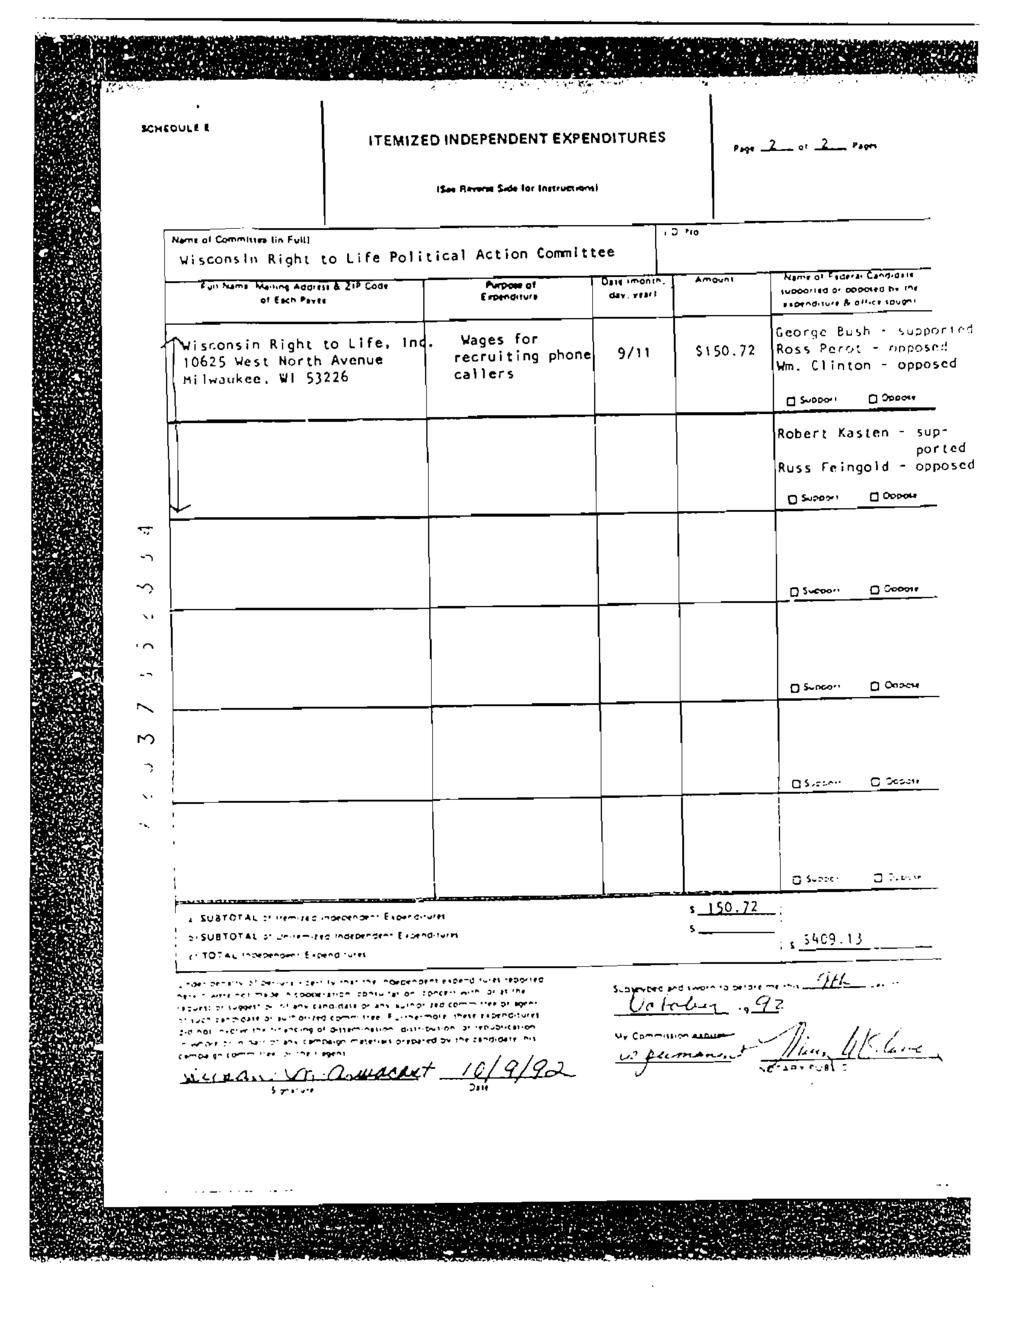 Case 1:04-cv-01260-RJL-RWR Document